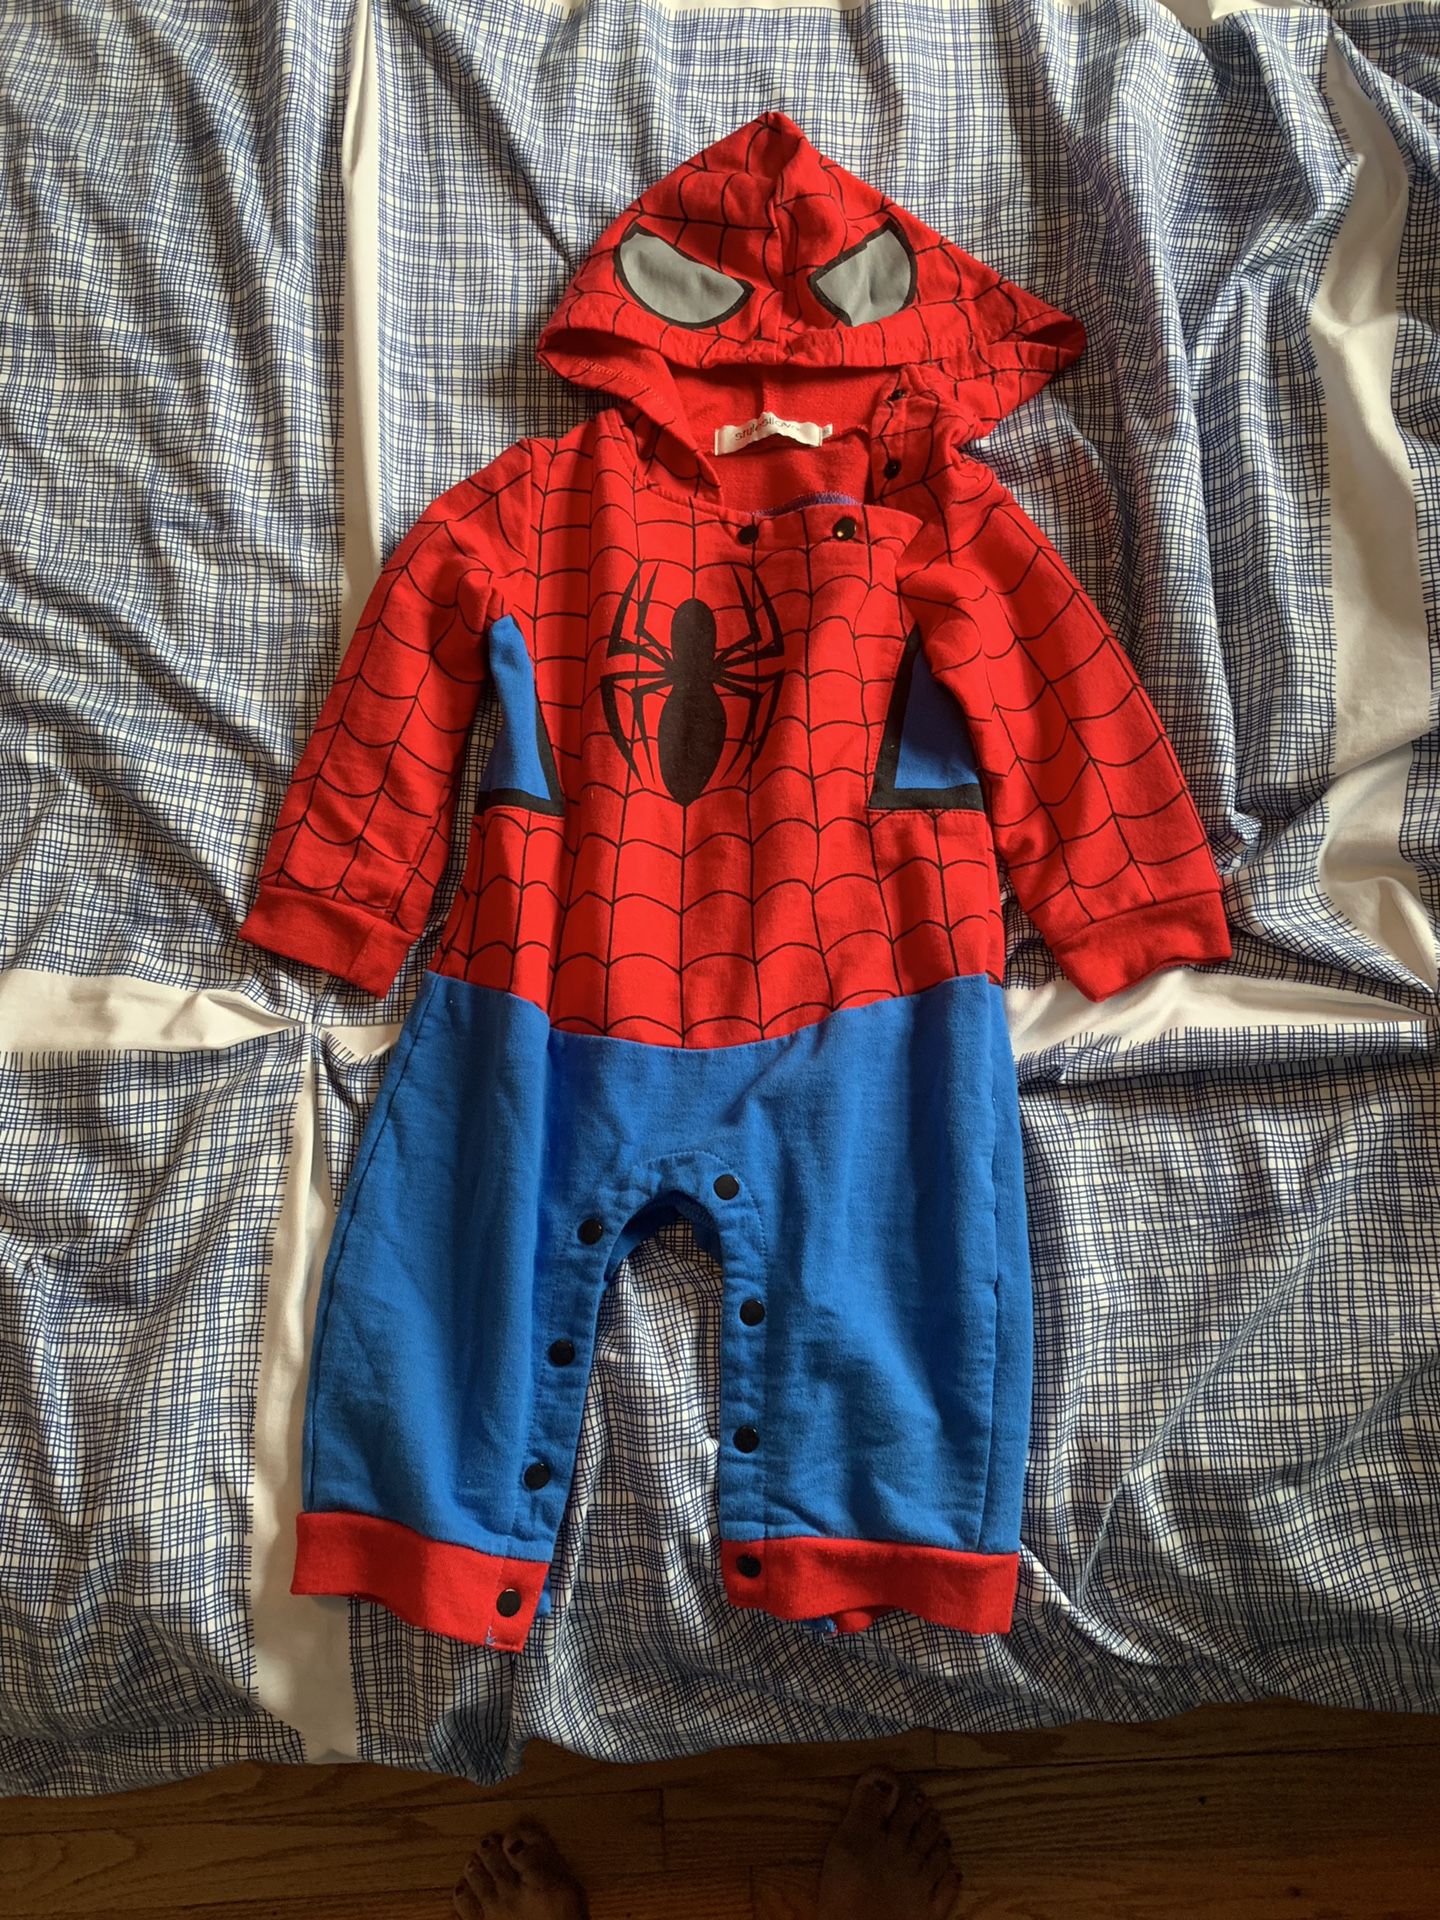 Spiderman costume 18 months